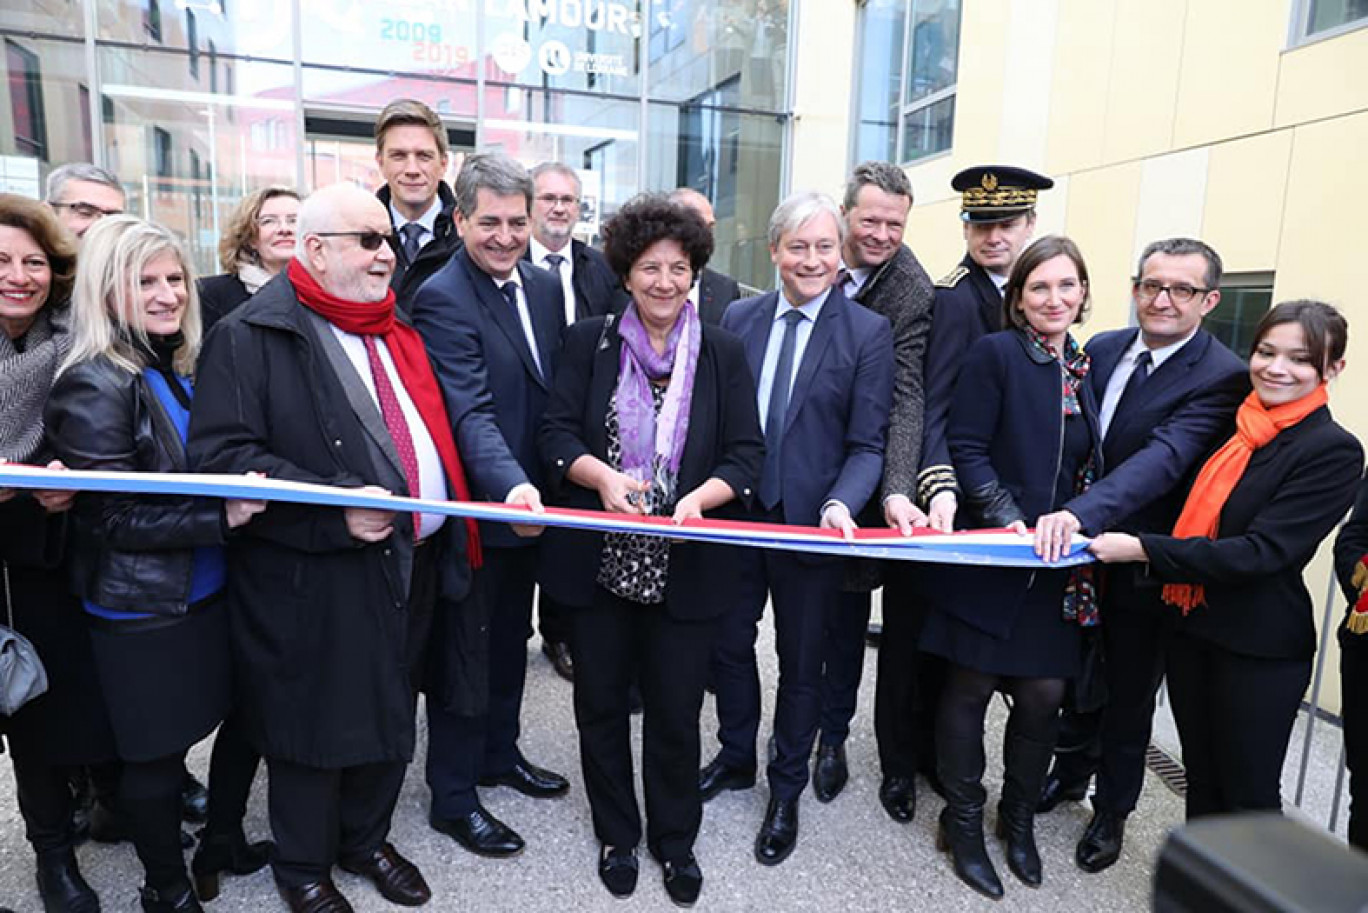 crédit : Préfecture de Meurthe-et-Moselle
Frédérique Vidal, la ministre de l’Enseignement supérieur, de la Recherche et de l’Innovation, a inauguré le 5 avril le bâtiment de l’IJL sur le campus nancéien Artem.
